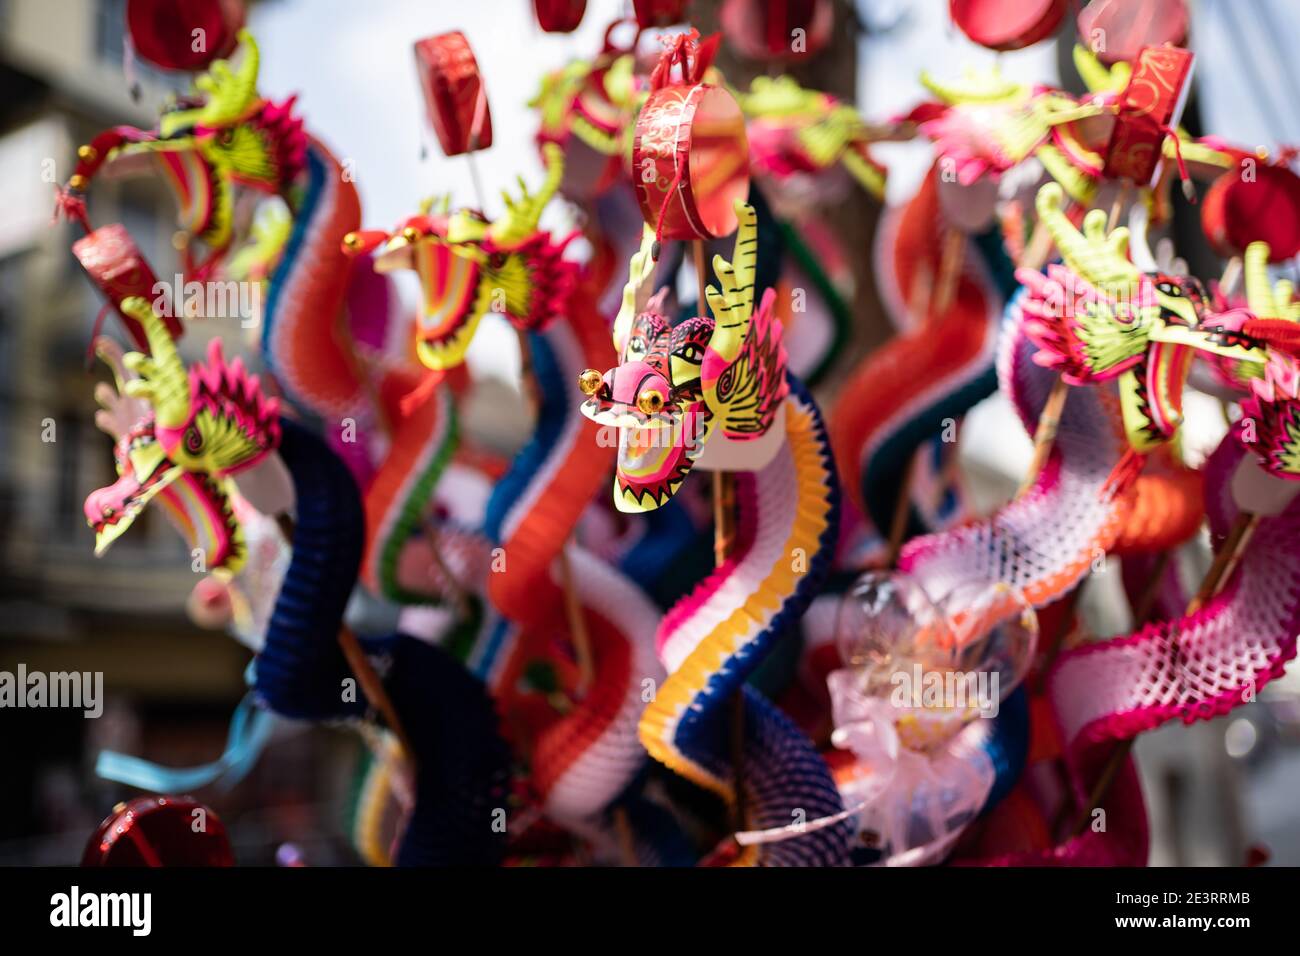 Marionetta di drago cinese fatta da carta nel nuovo anno lunare festival Foto Stock